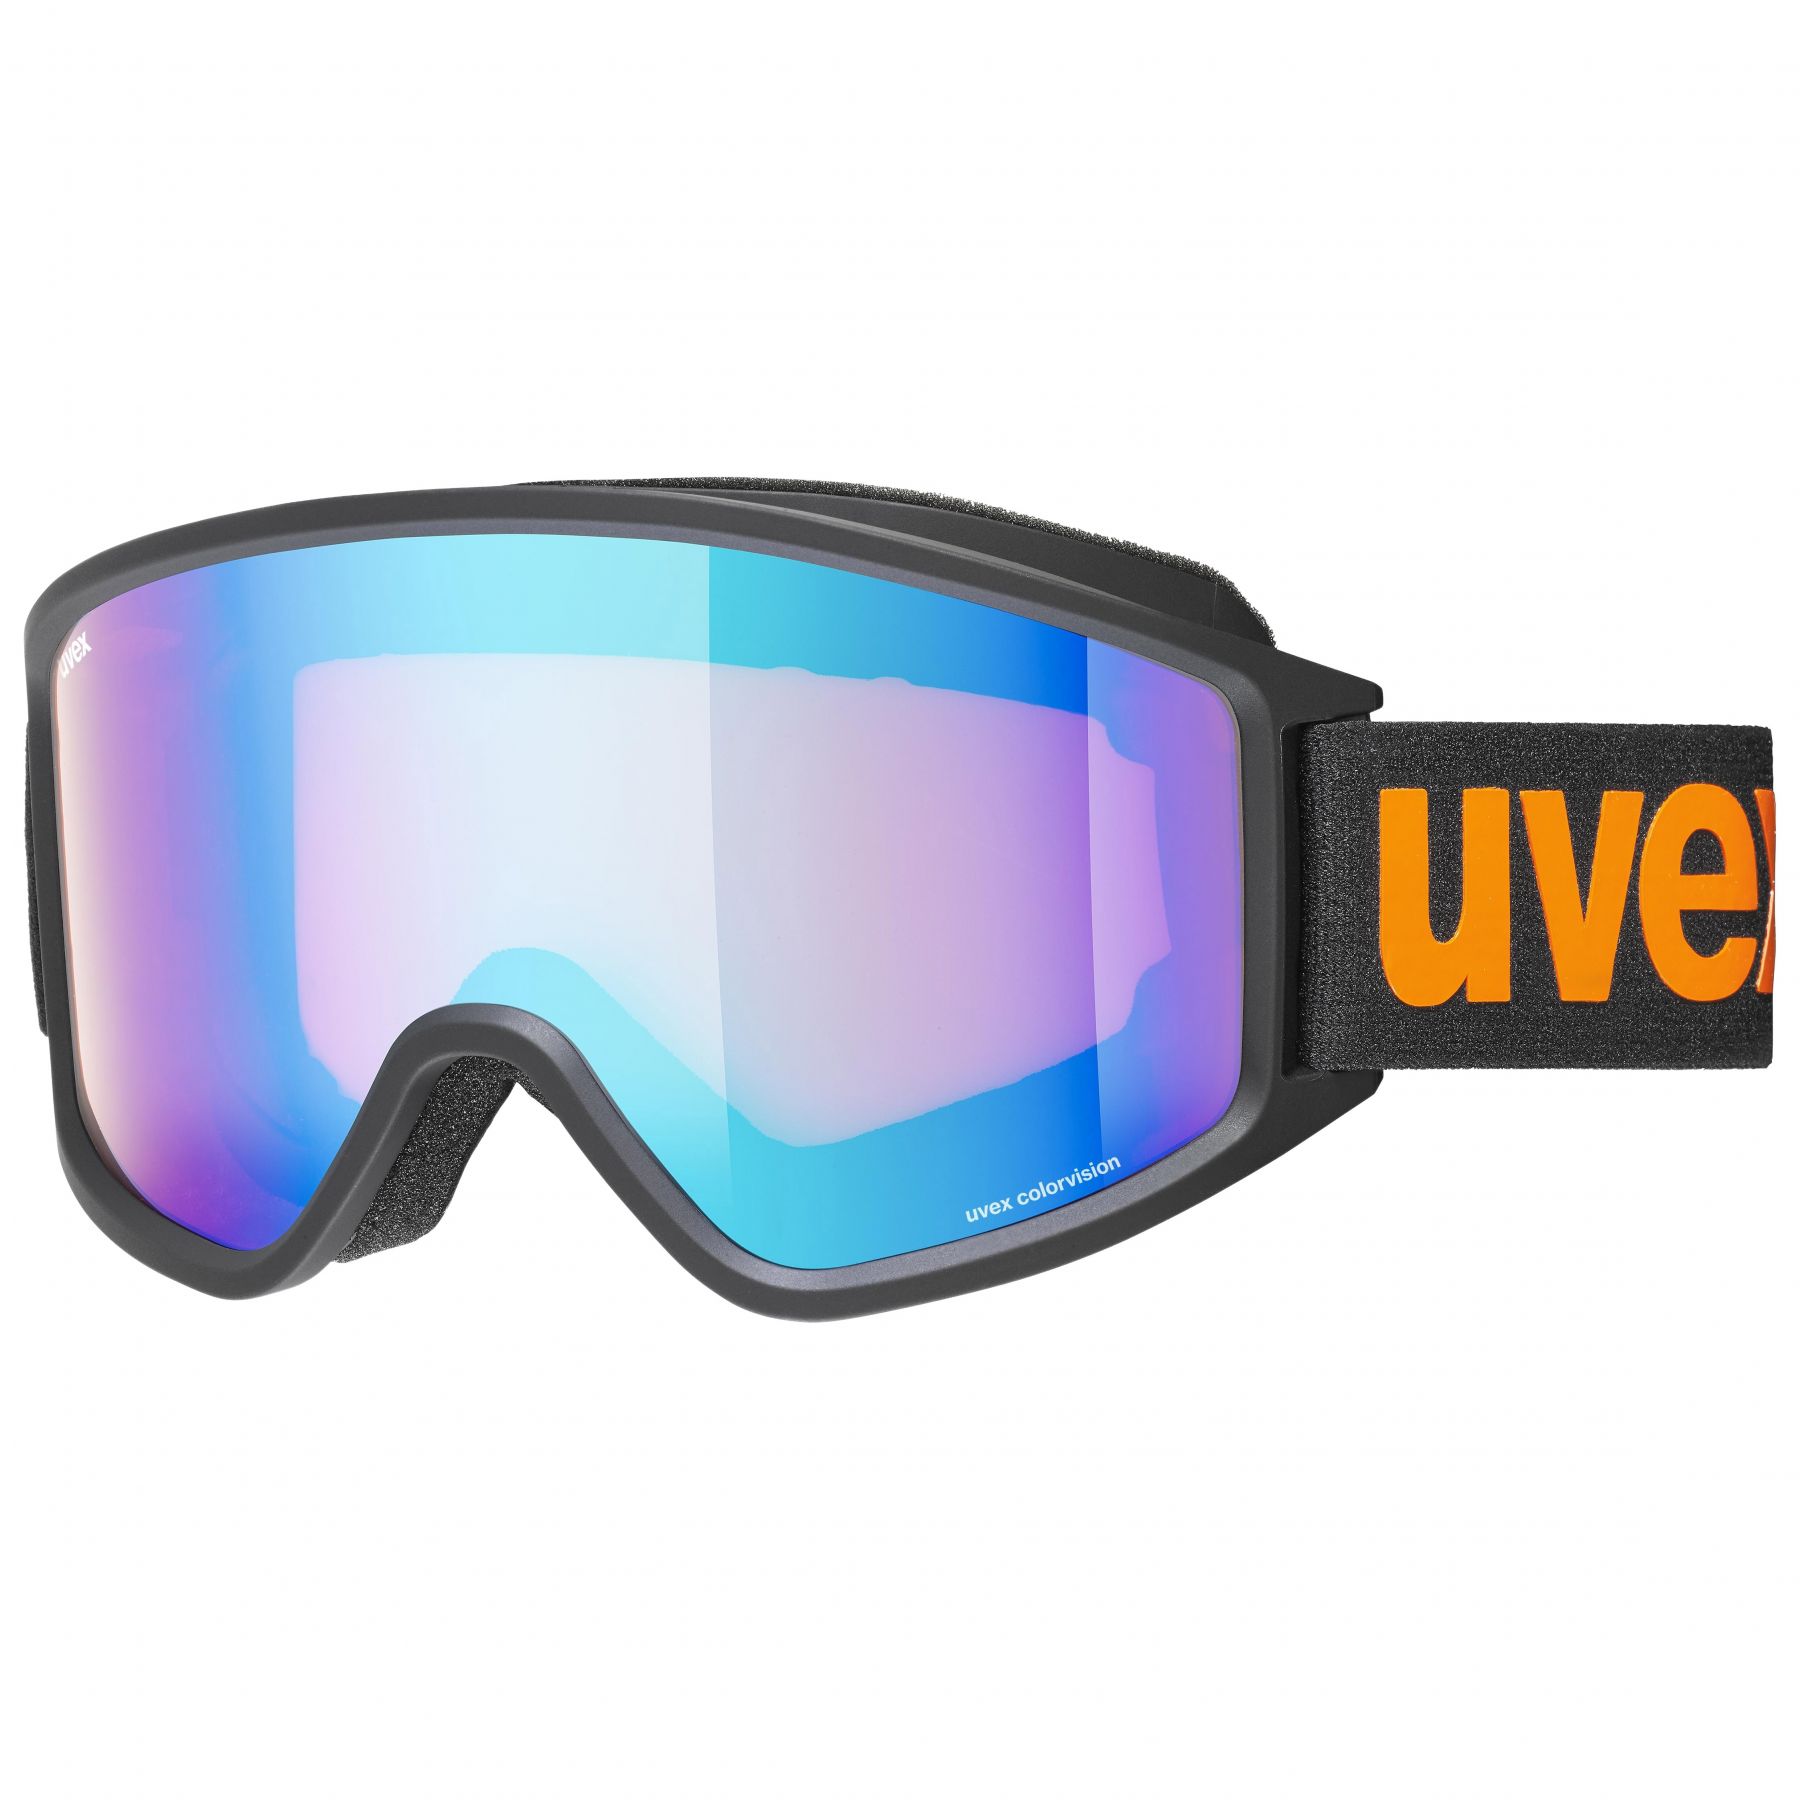 Uvex g.gl. 3000 CV hiihtolasit musta/oranssi